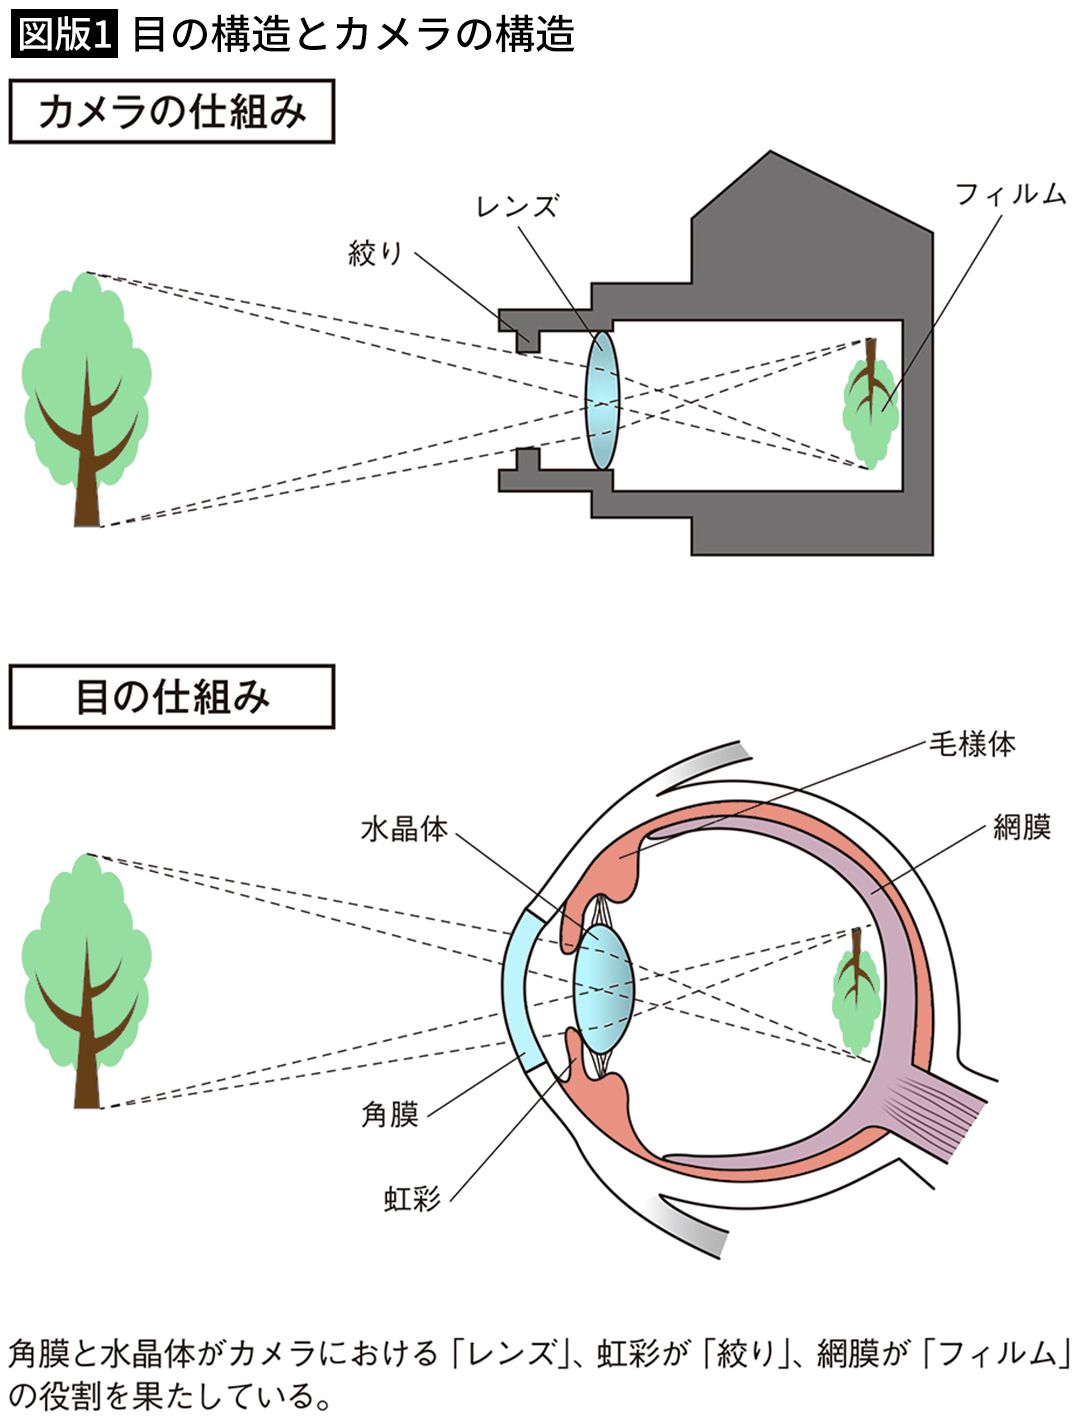 【図版1】目の構造とカメラの構造